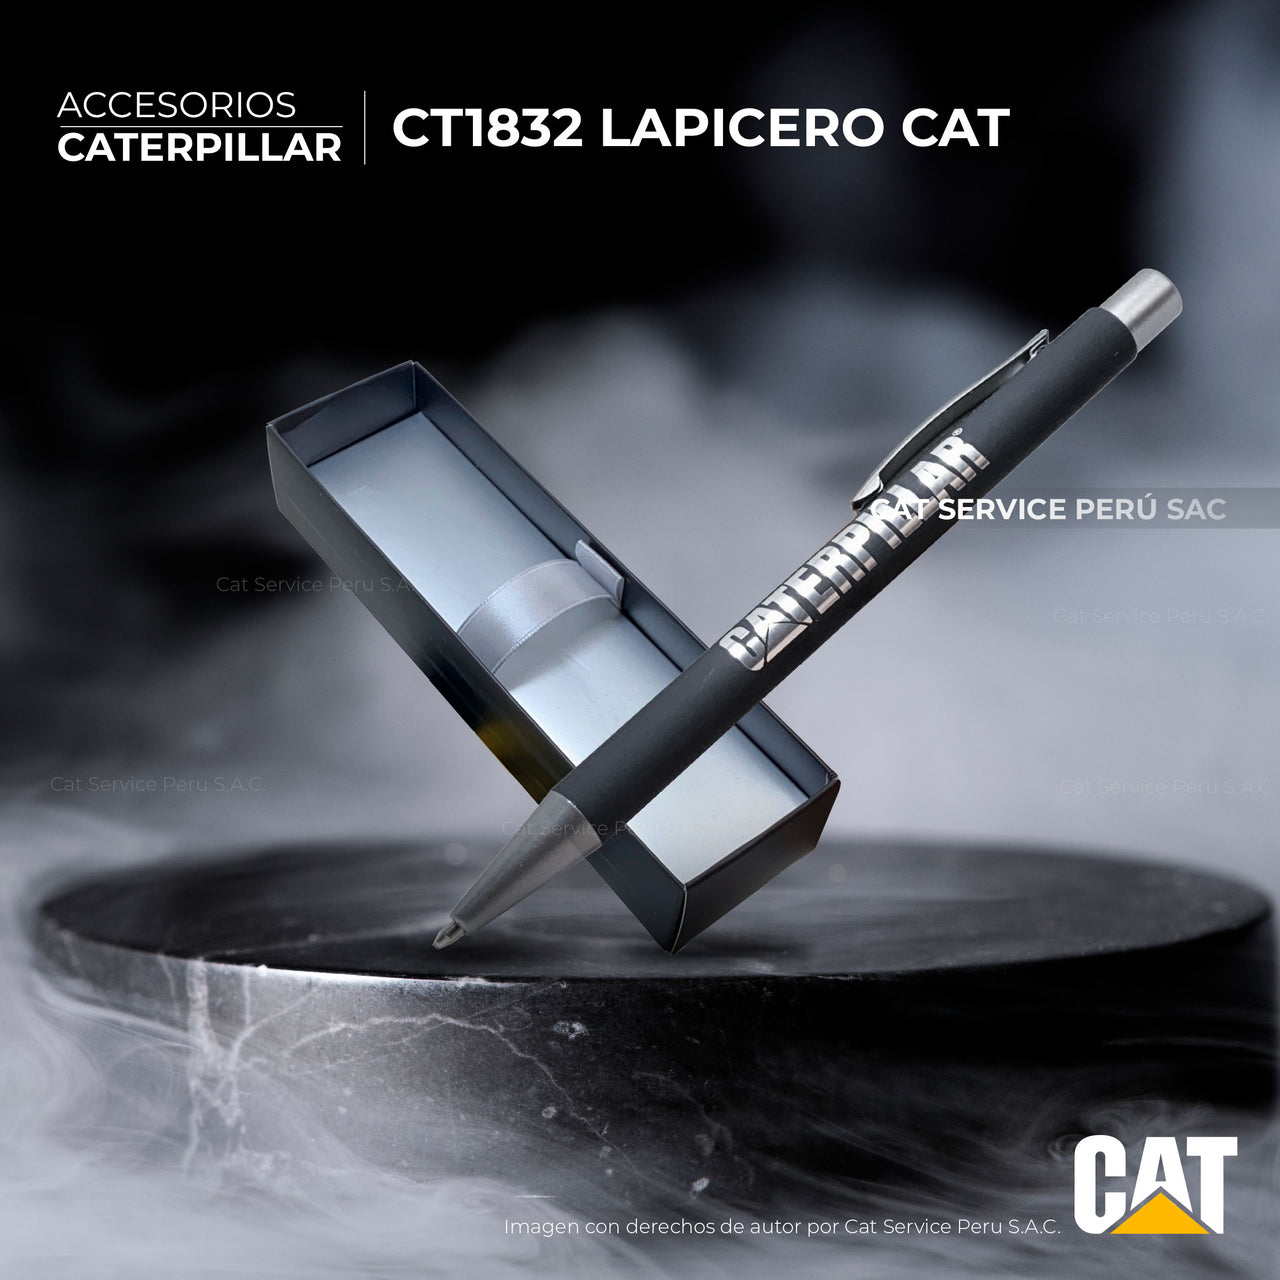 CT1832 Lapicero Cat